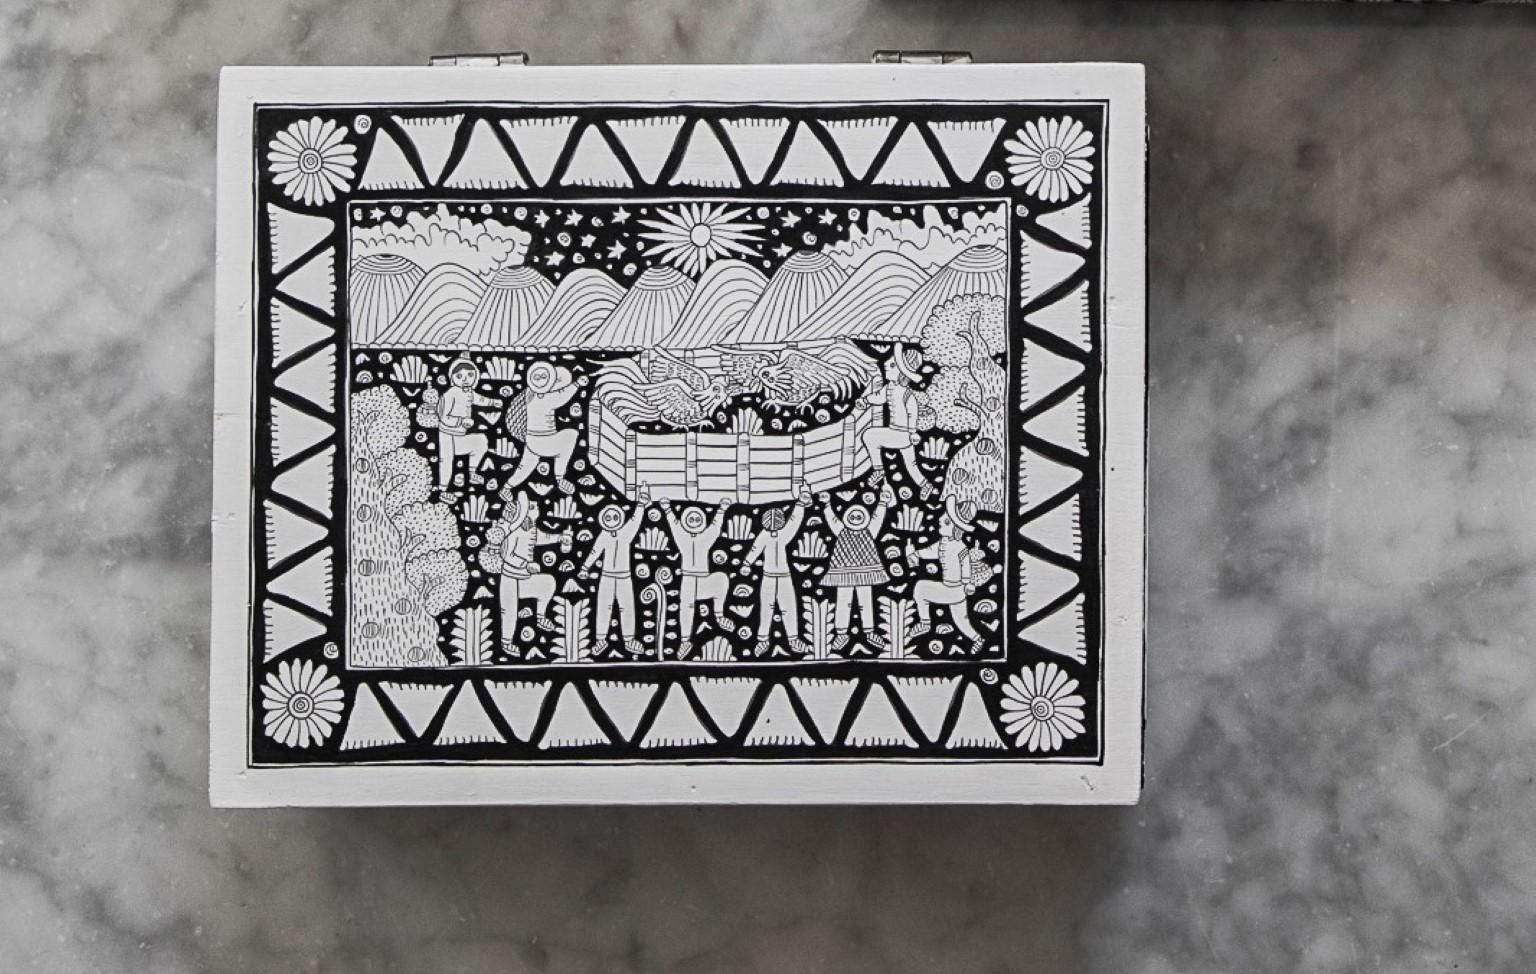 Xalitla-Schachtel von Onora
Abmessungen: 25 x 20 cm
MATERIALIEN: Freihand bemaltes Holz

Handbemalte Teedose aus Xalitla, Guerrero. Die auf jedem Stück gemalten Szenen zeigen das alltägliche Leben in dieser Region von Guerrero, von der